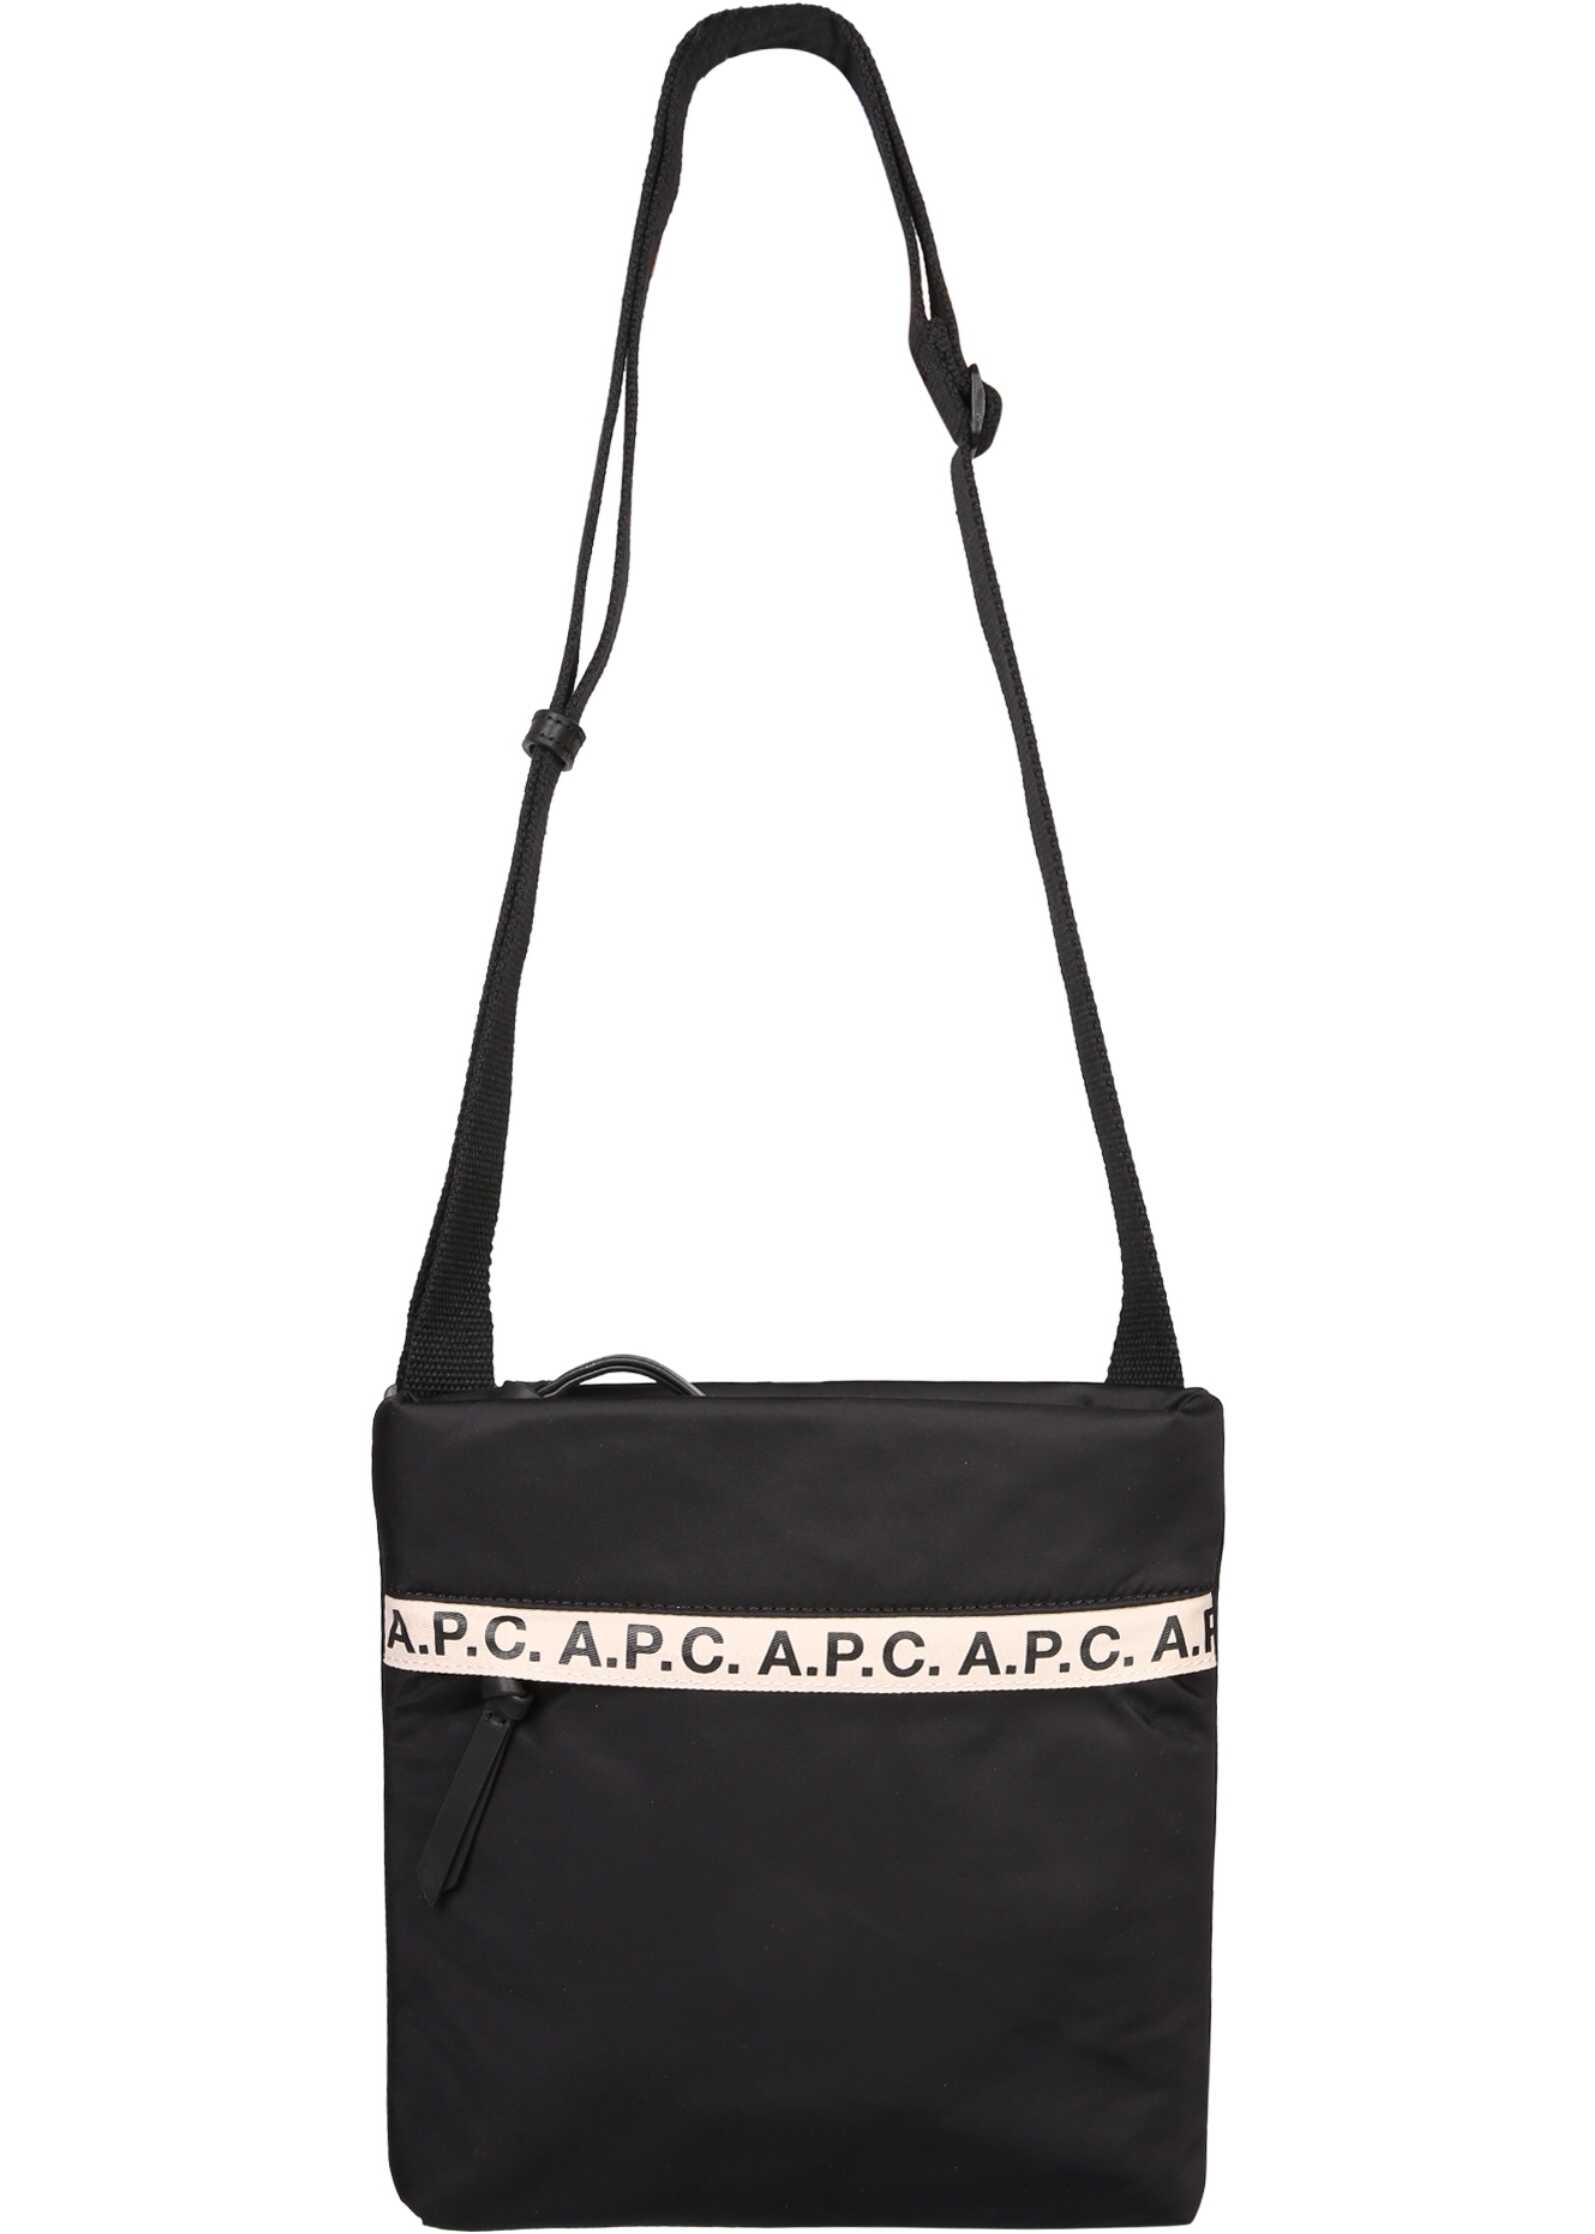 A.P.C. Shoulder Bag With Logo BLACK image18